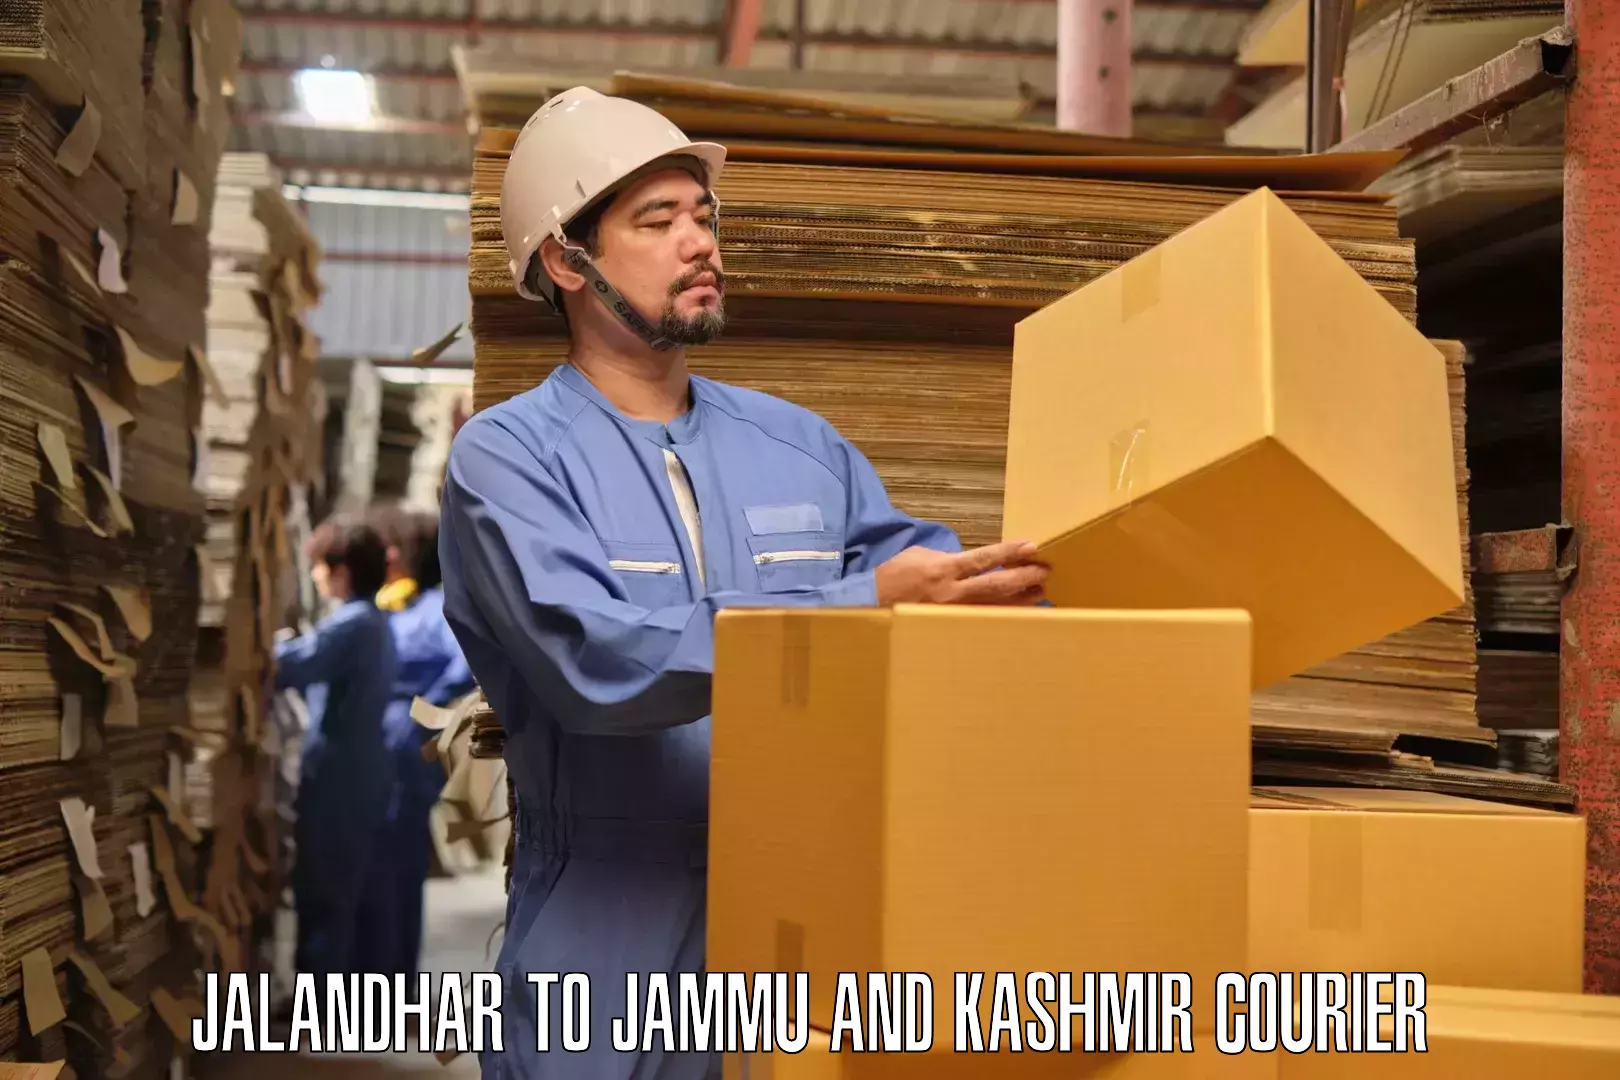 Furniture delivery service Jalandhar to Jammu and Kashmir